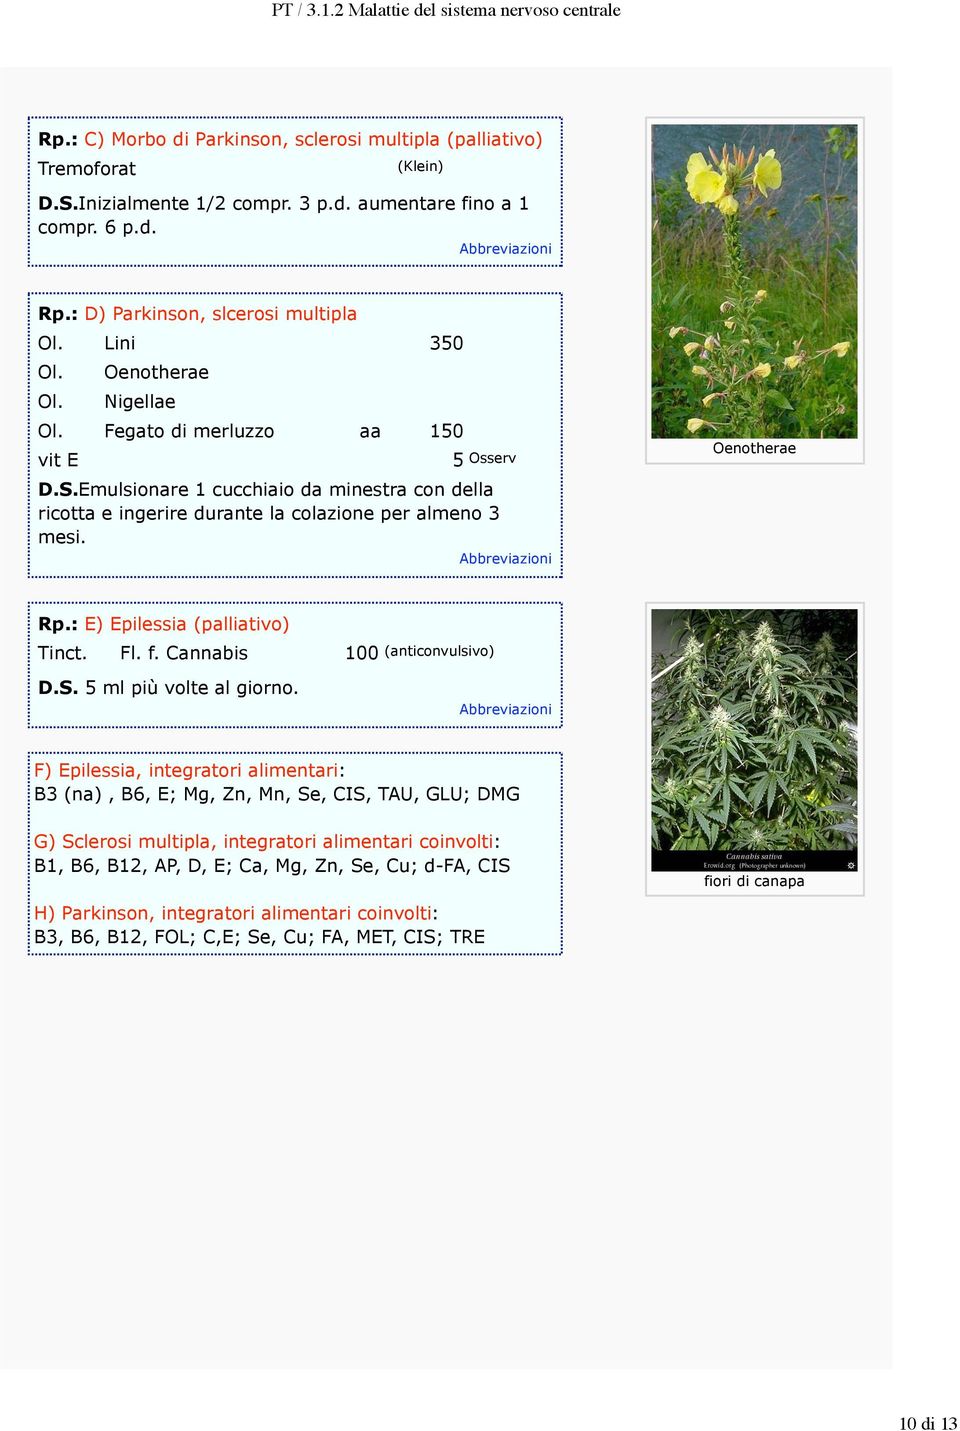 Abbreviazioni Oenotherae Rp.: E) Epilessia (palliativo) Tinct. Fl. f. Cannabis 100 (anticonvulsivo) D.S. 5 ml più volte al giorno.